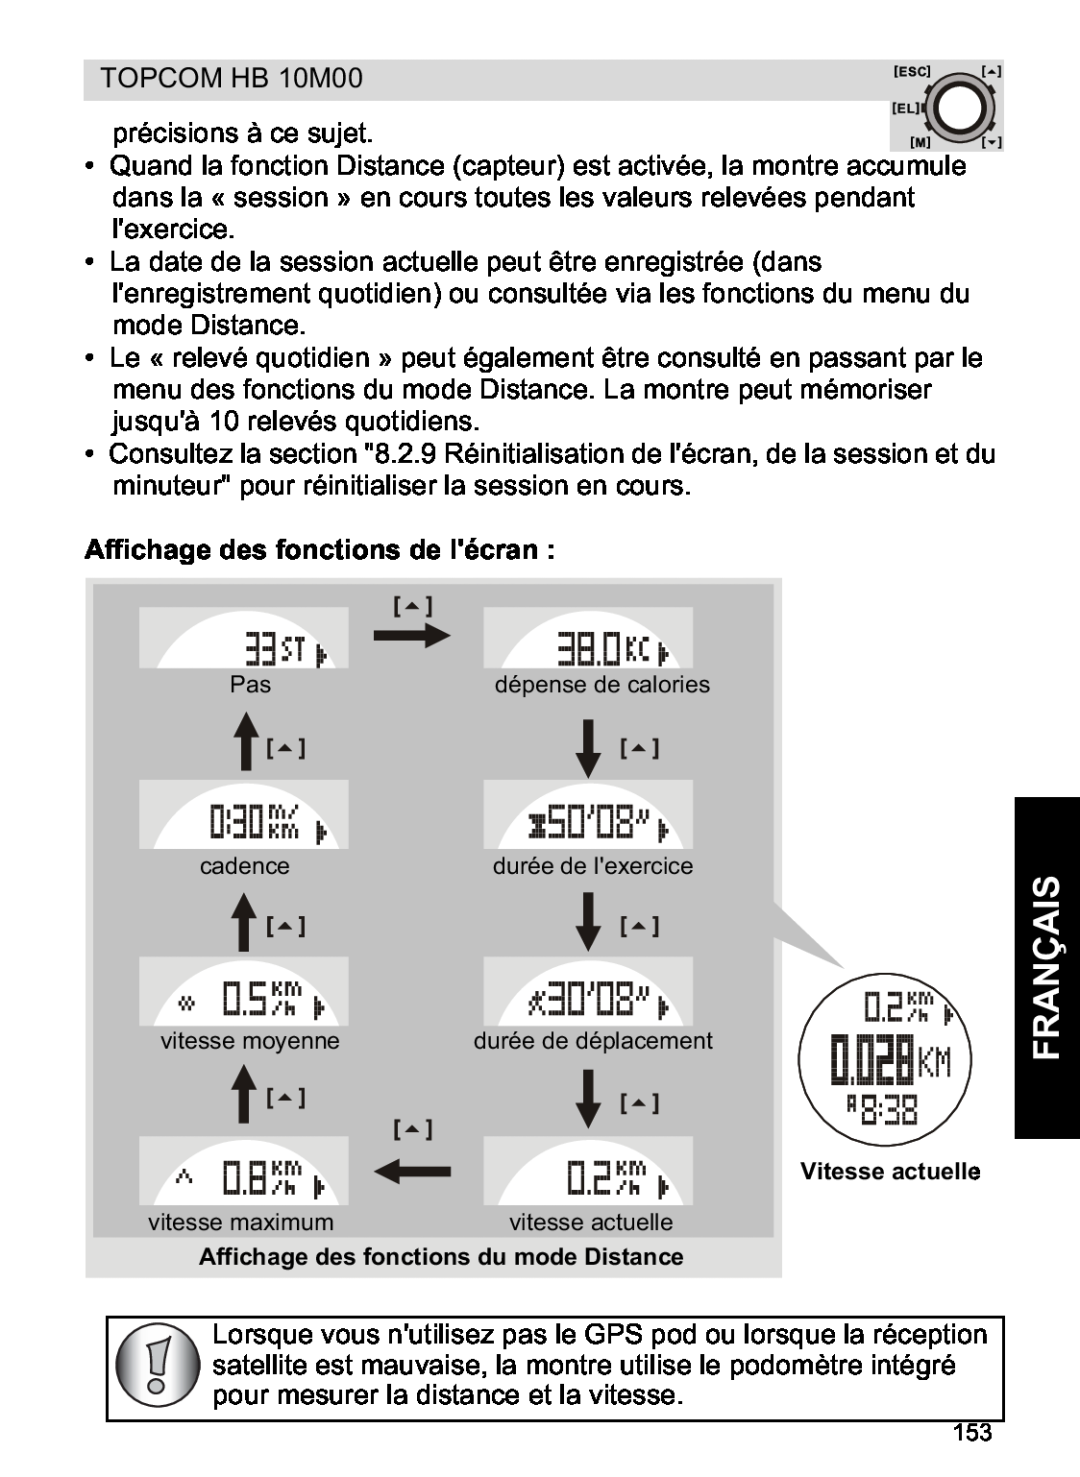 Topcom HB 10M00 manual Affichage des fonctions de lécran, Français 